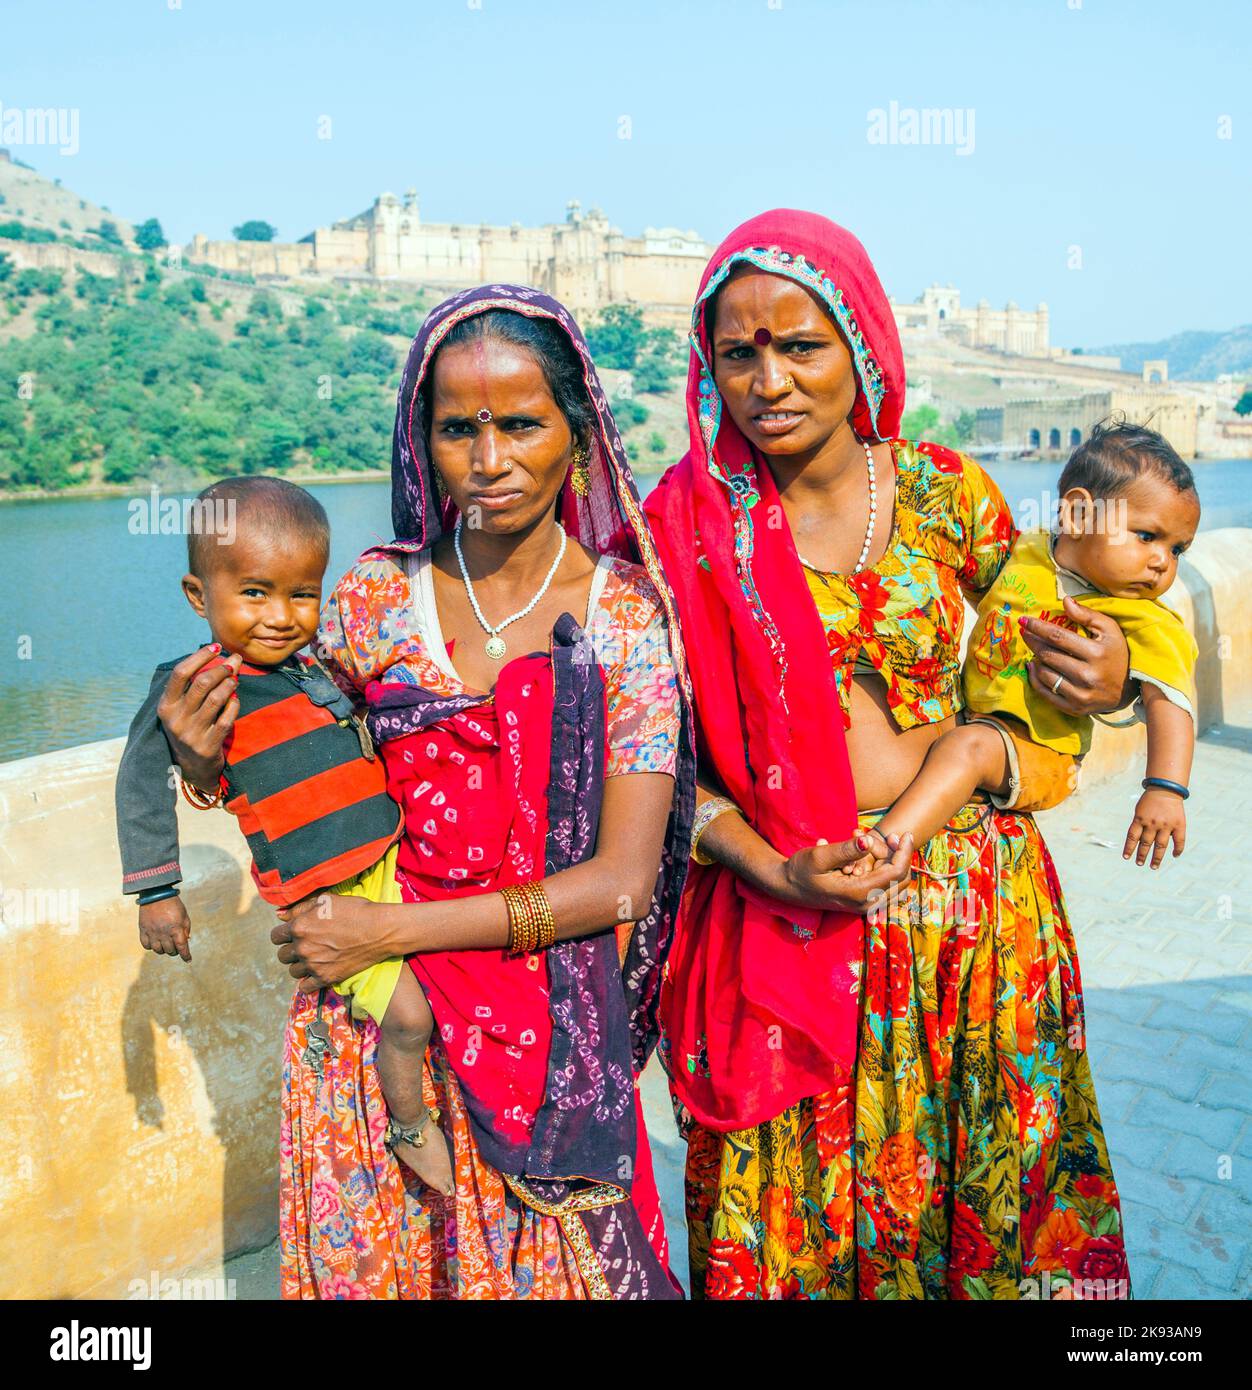 JAIPUR, INDIA - 19 DE OCTUBRE de 2012: Las mujeres piden dinero con sus hijos de 1 años de edad en brazos en Jaipur, India. La mendicidad con bebés es popular en touristi Foto de stock